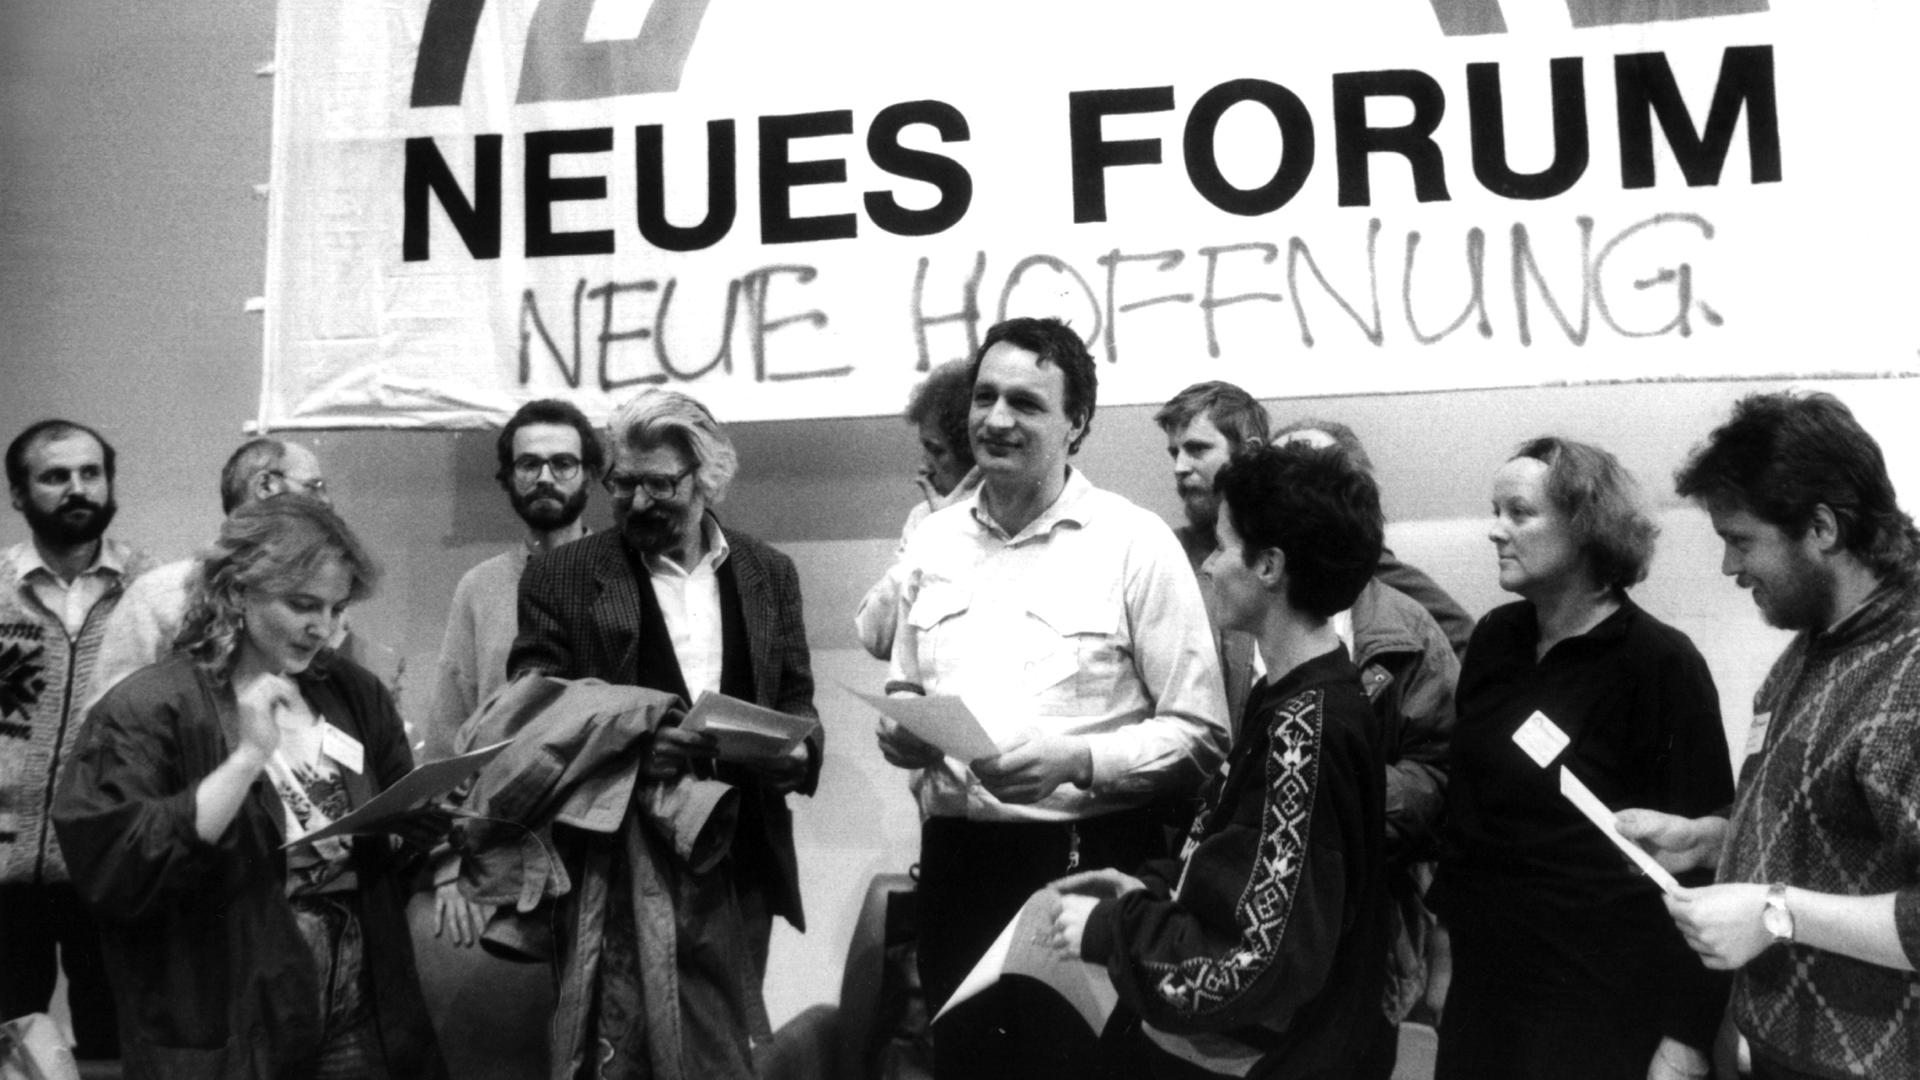 Schwarzweiß-Fotografie von einer Gruppe Menschen, die vor einem Banner mit der Aufschrift "Neues Forum" stehen. Darunter steht geschrieben "Neue Hoffnung". 